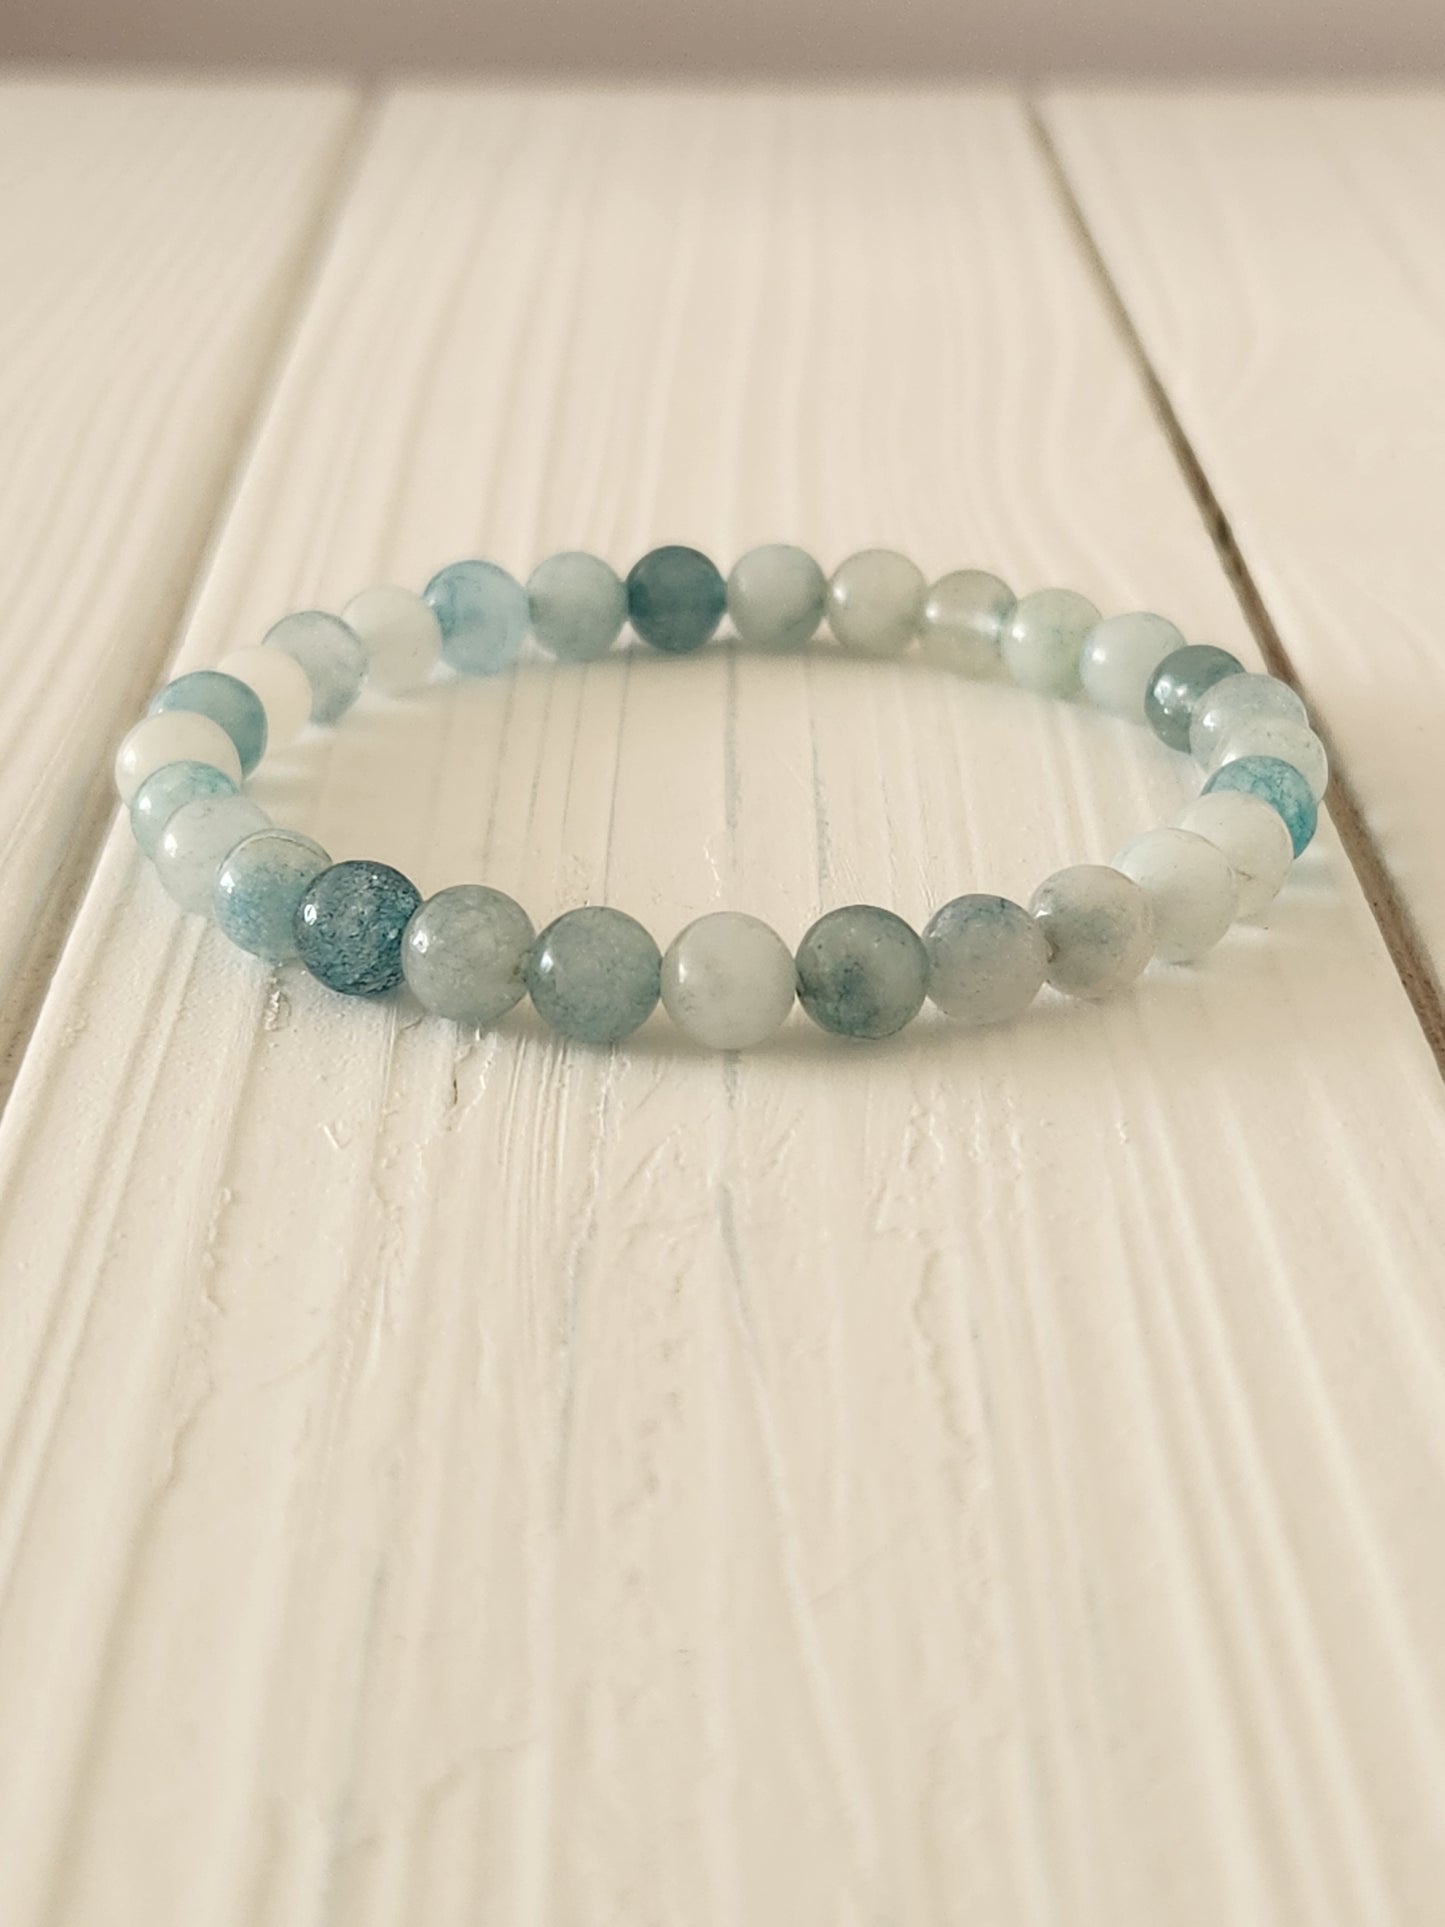 Light Blue Agate Bracelet - stability - patience - balance